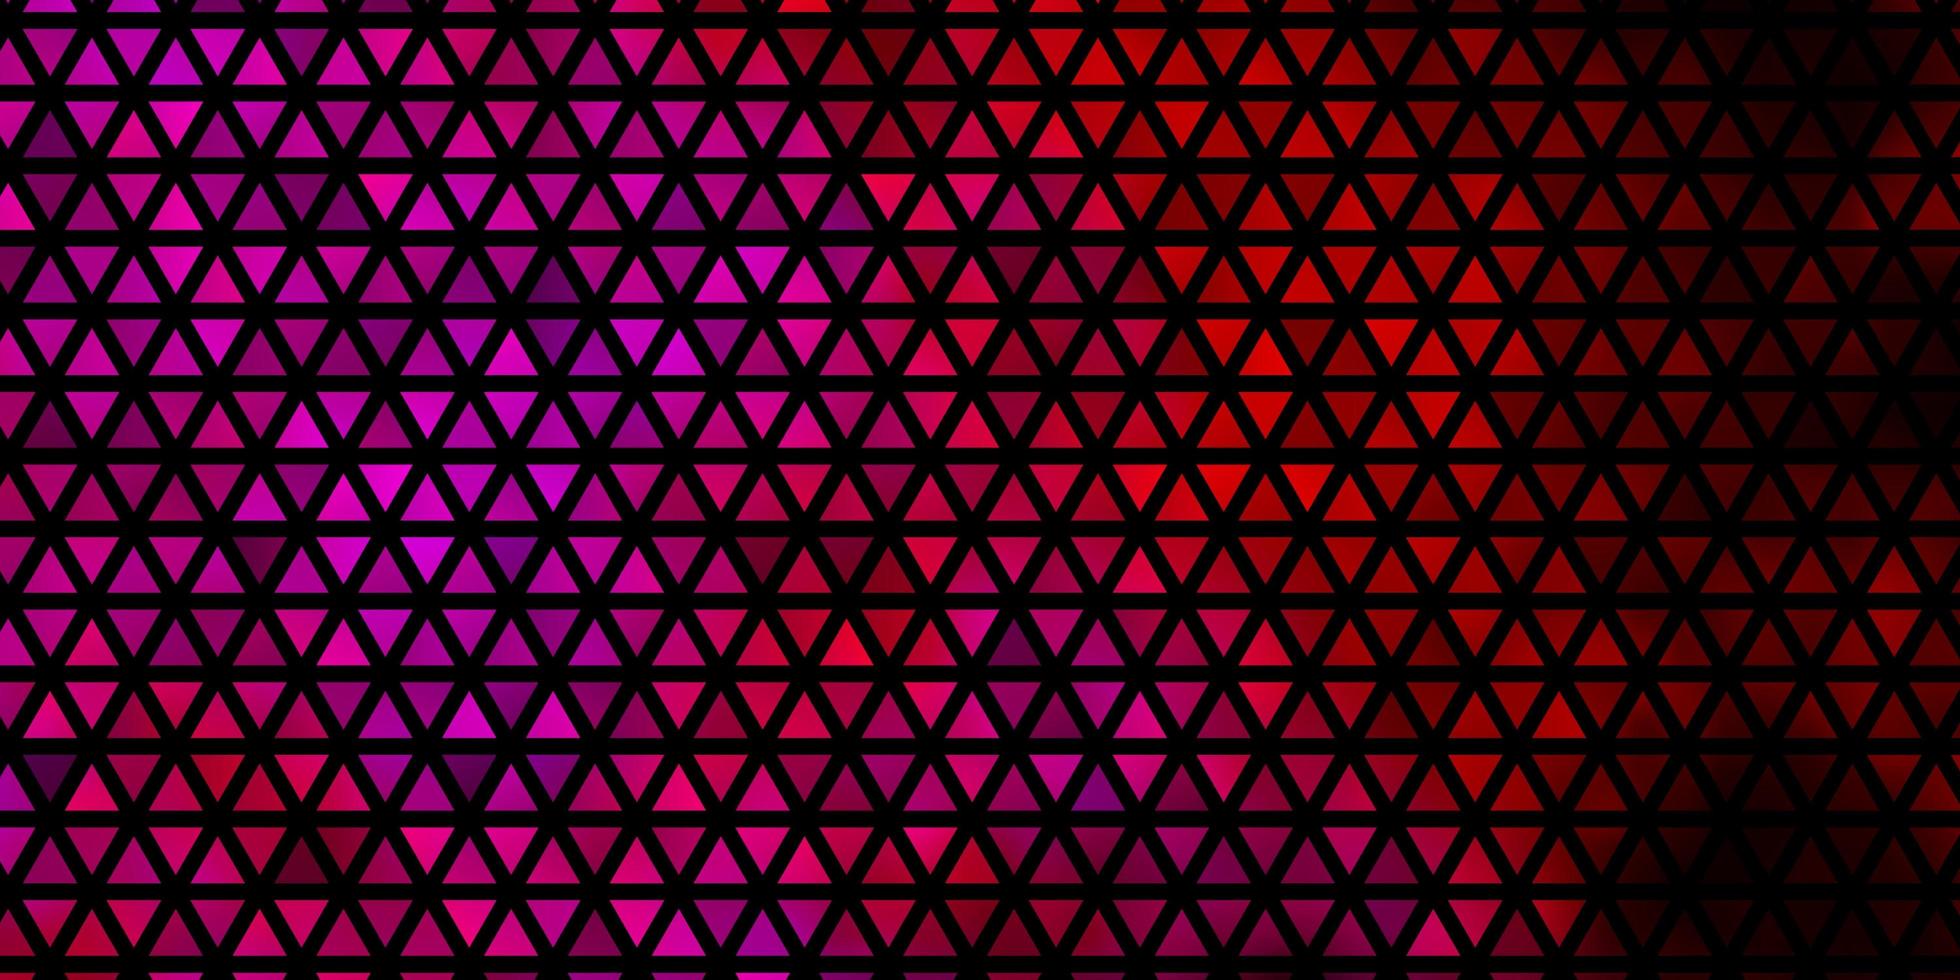 pano de fundo vector roxo, rosa escuro com linhas, triângulos.